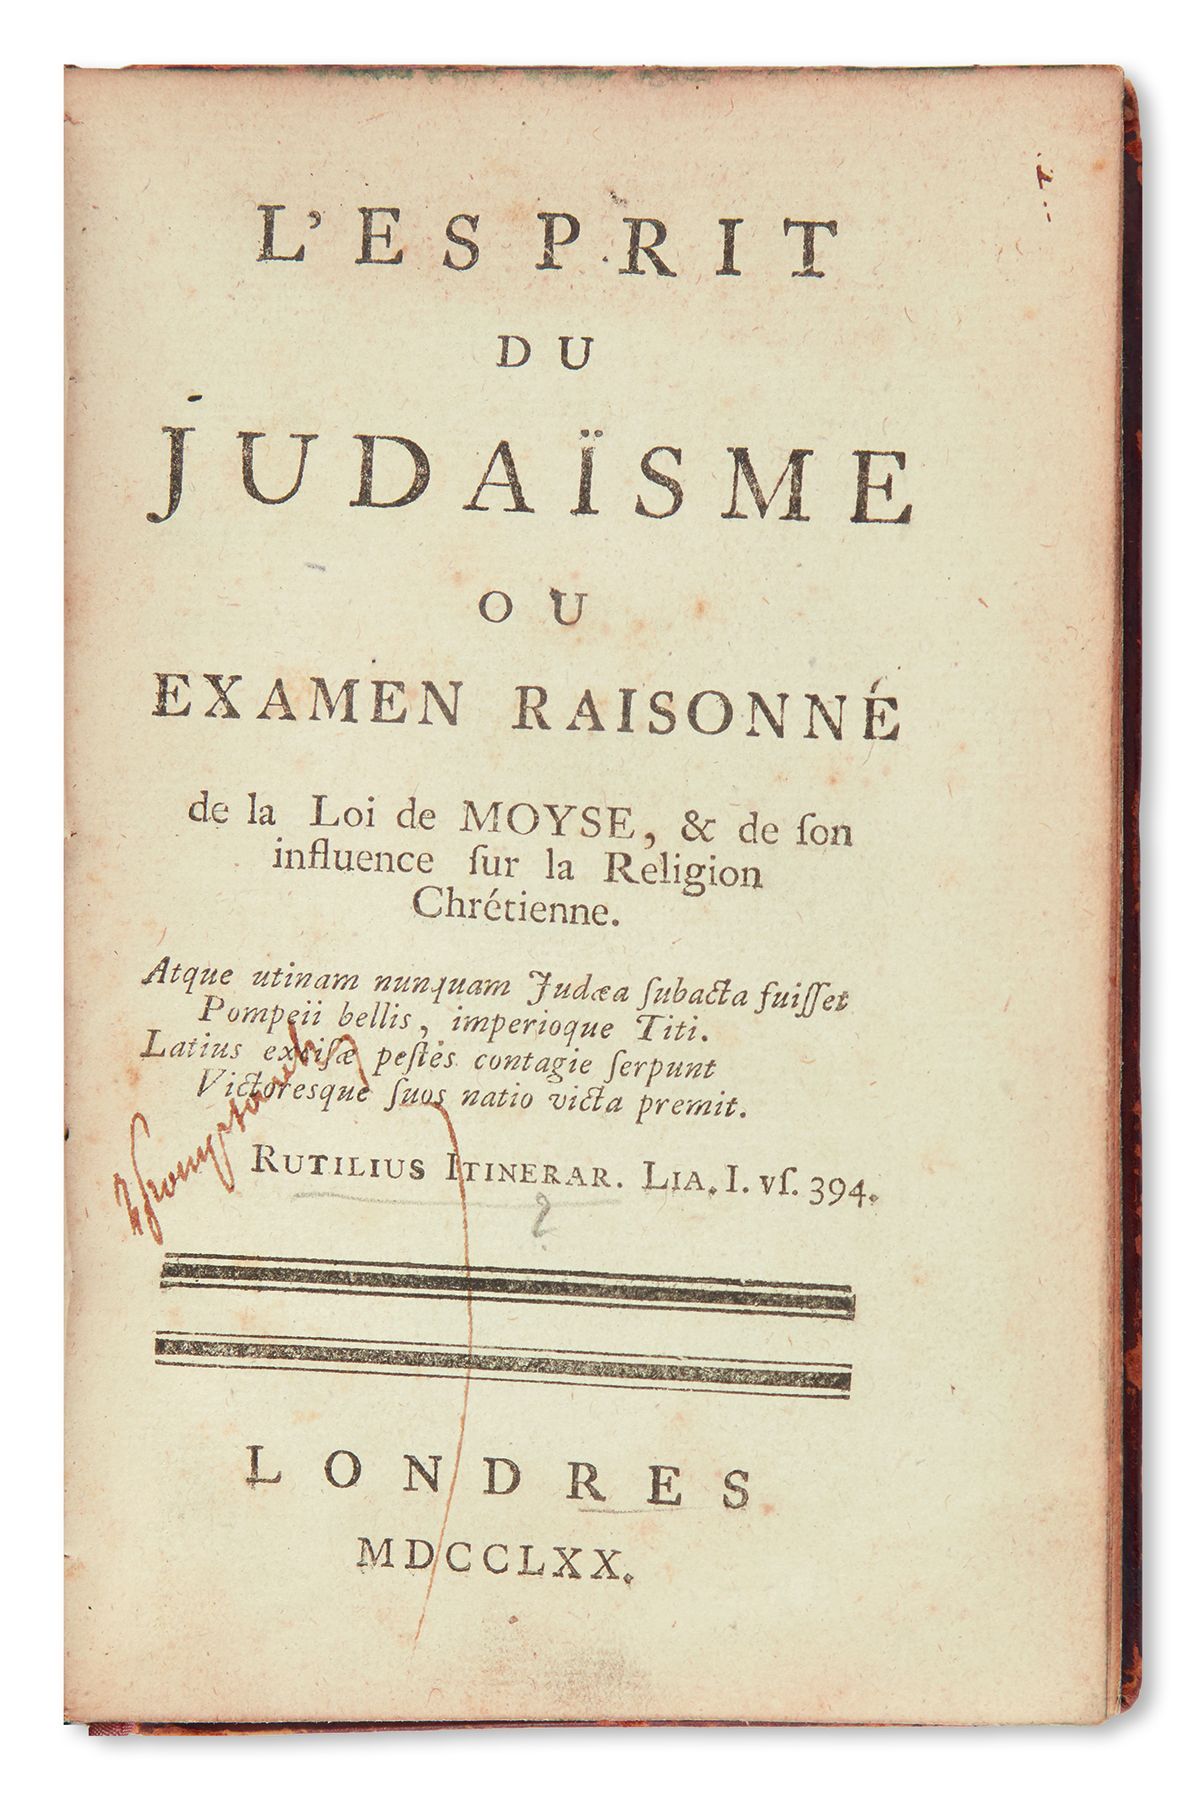 L’Esprit du Judaisme ou Examen Raisonne de la Loi de Moyse [“The Spirit of Judaism